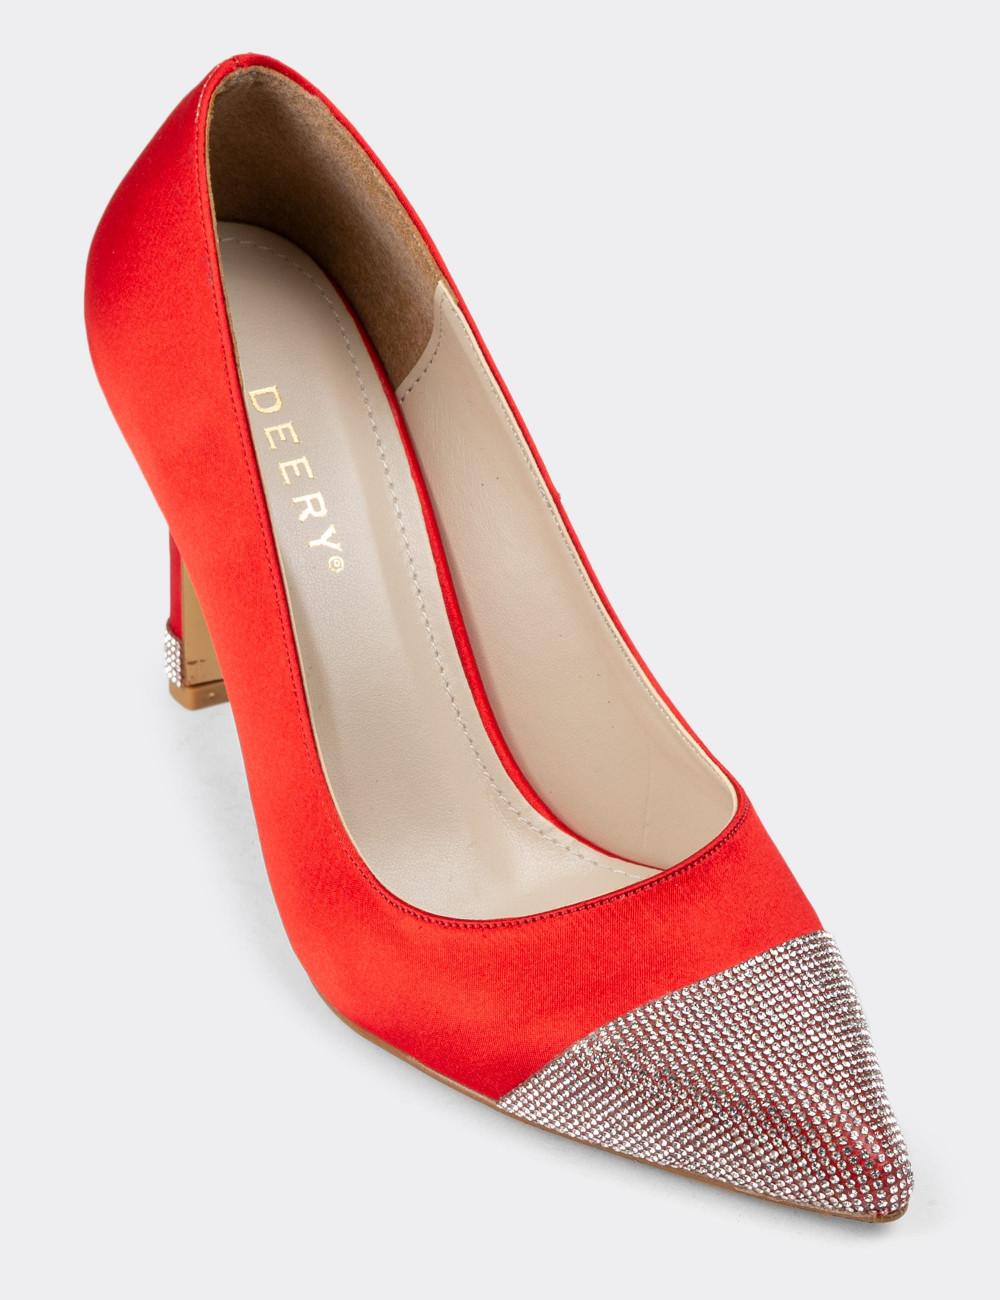 Kırmızı Saten Taşlı Stiletto Kadın Topuklu Ayakkabı - K0030ZKRMM01